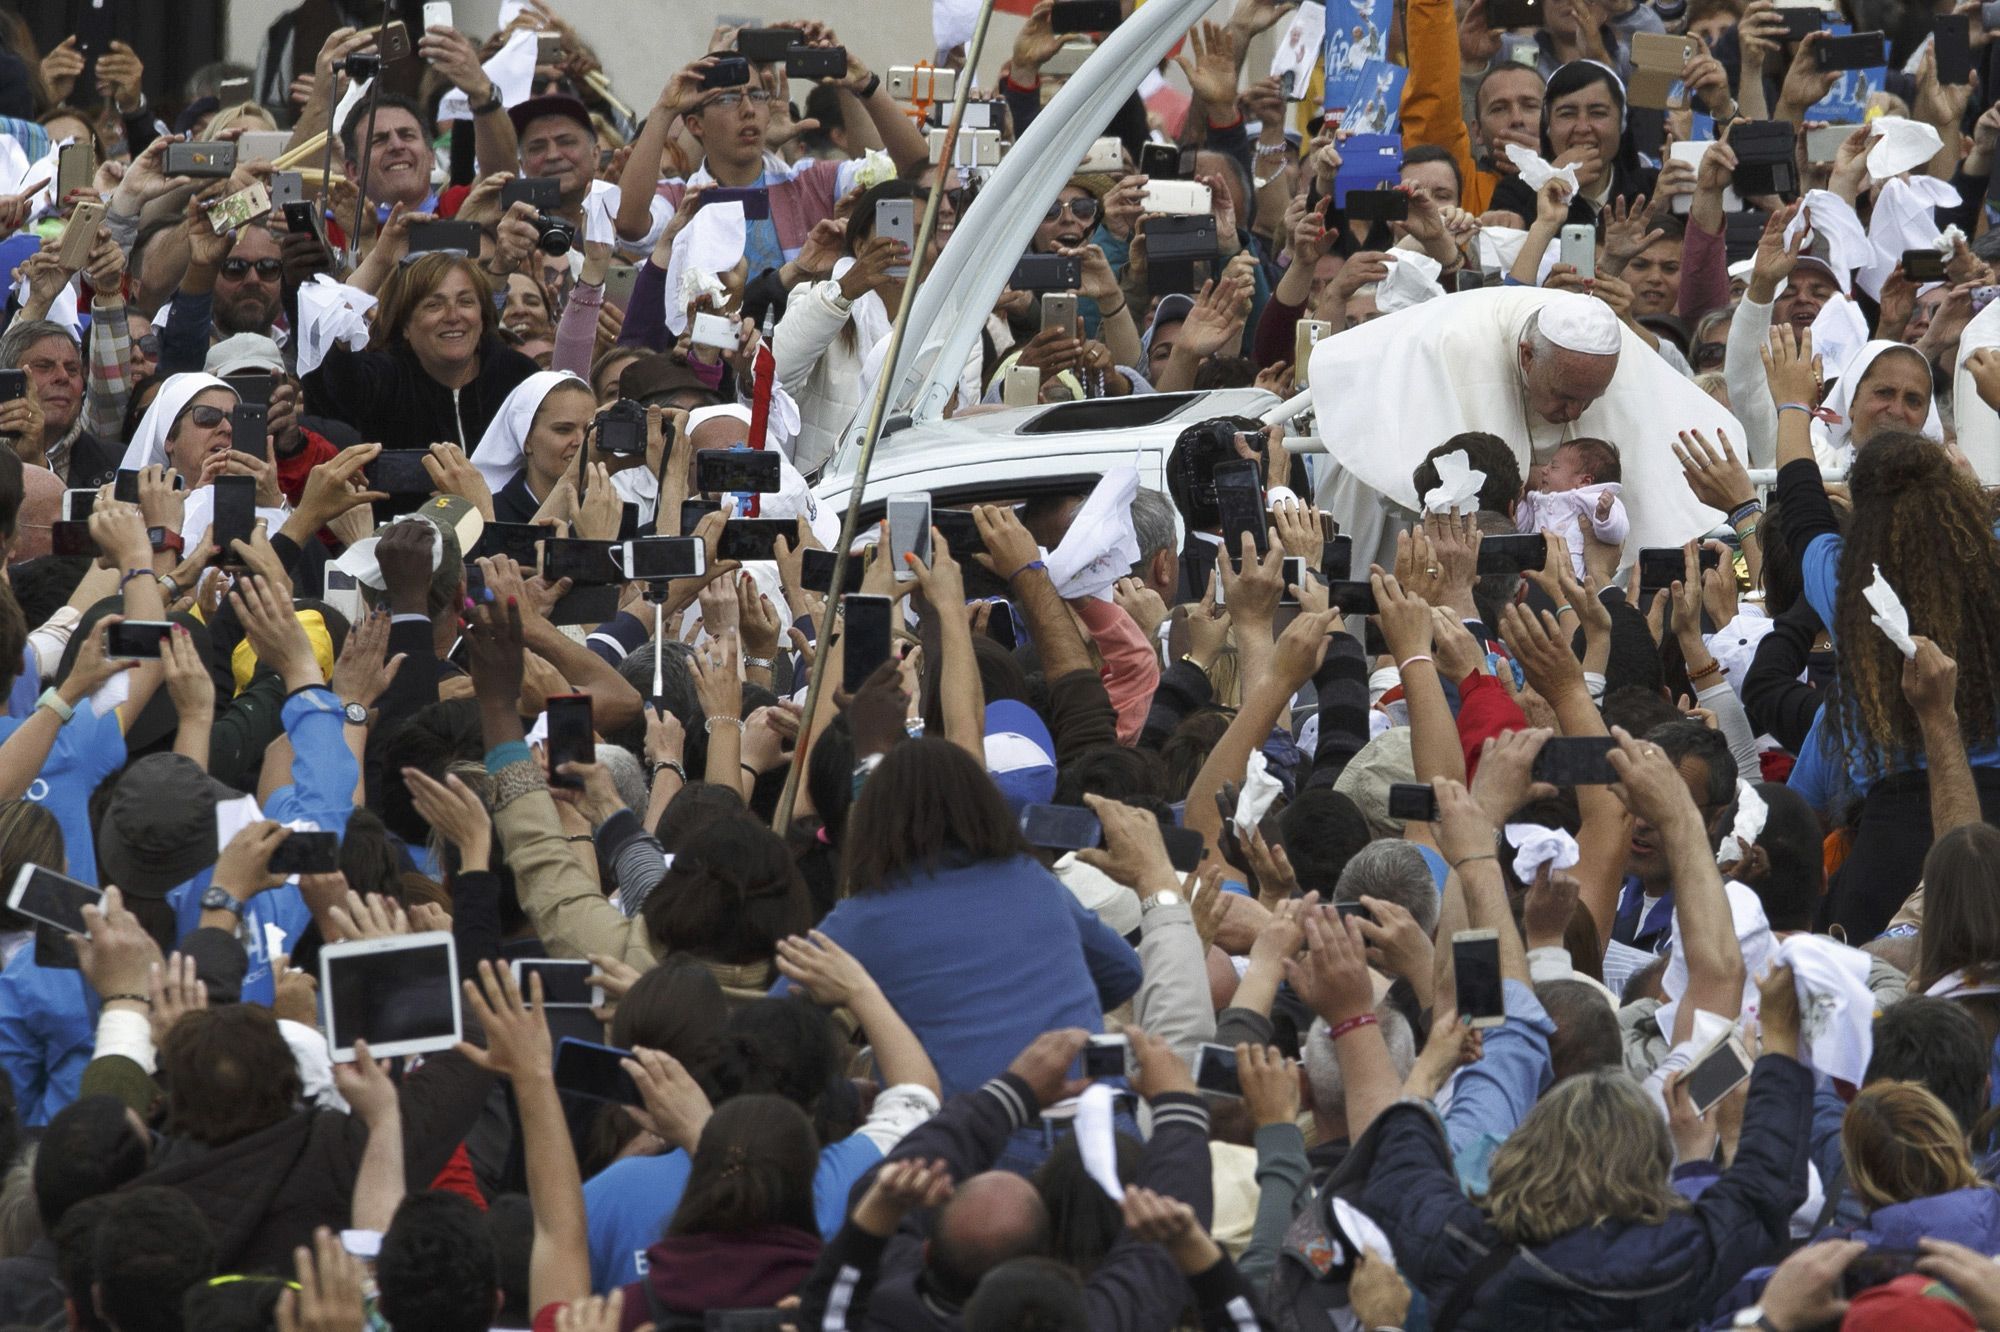 Résultat de recherche d'images pour "people le pape"